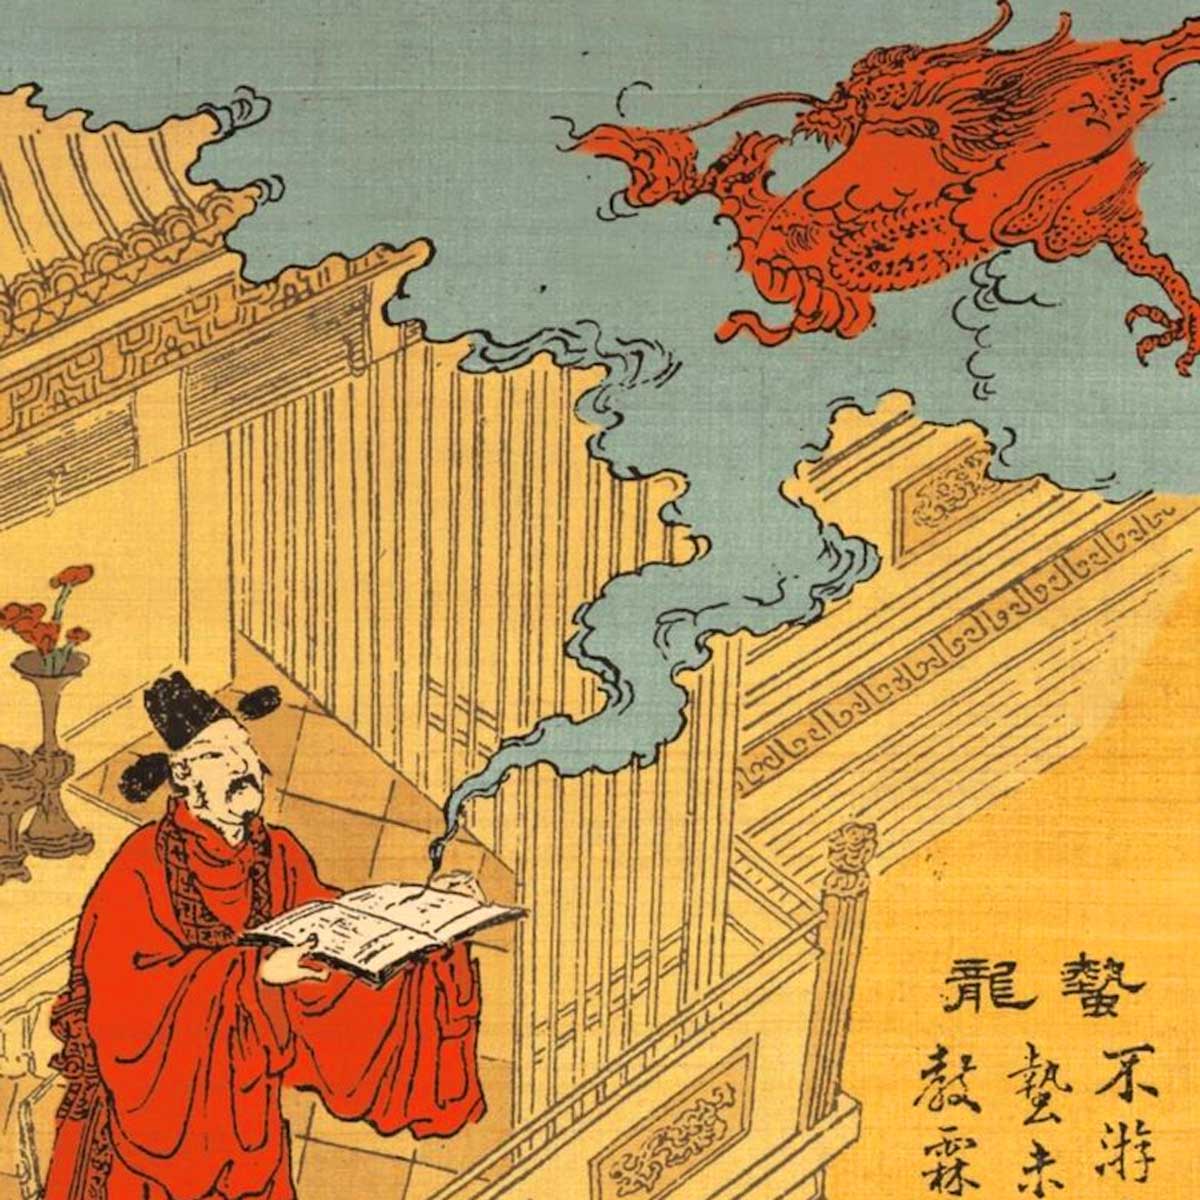 La literatura china consta de cuatro clásicos fundamentales muy alabados a nivel mundial.